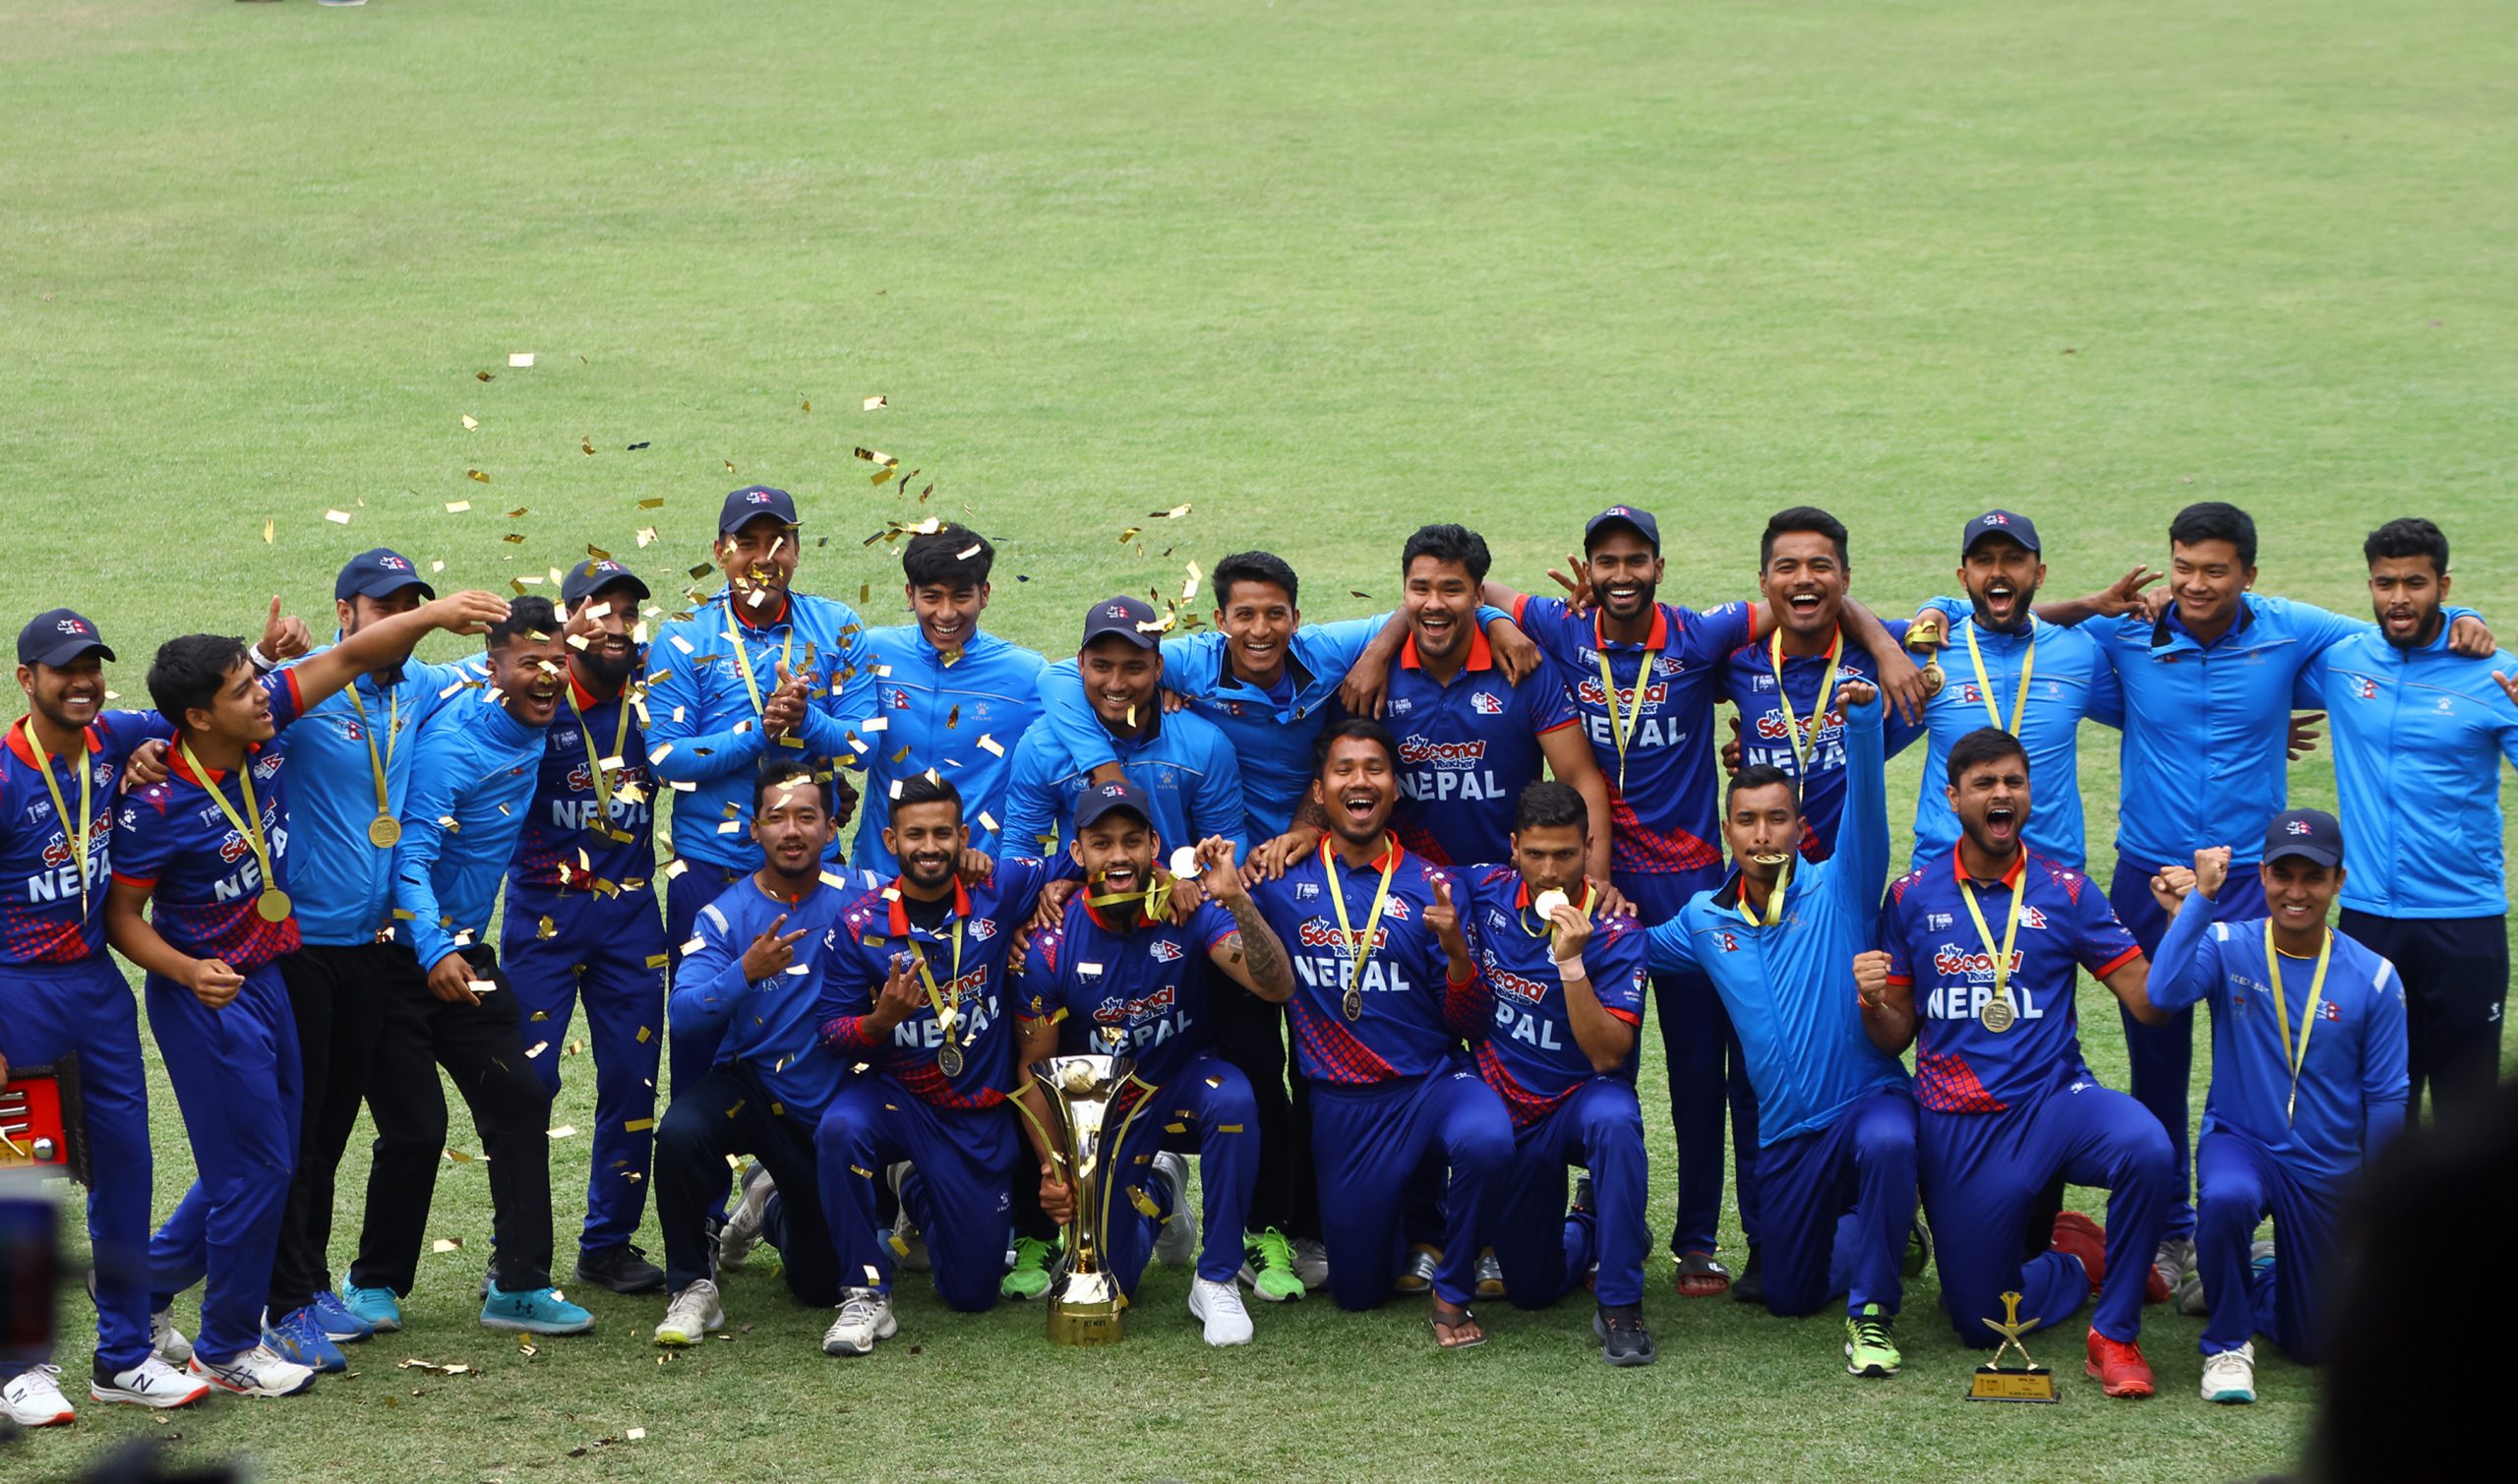 एसीसी प्रिमियर लिग विजेता नेपाल क्रिकेटर र प्रशिक्षकलाई जनही छ लाख दिने सरकारको निर्णय